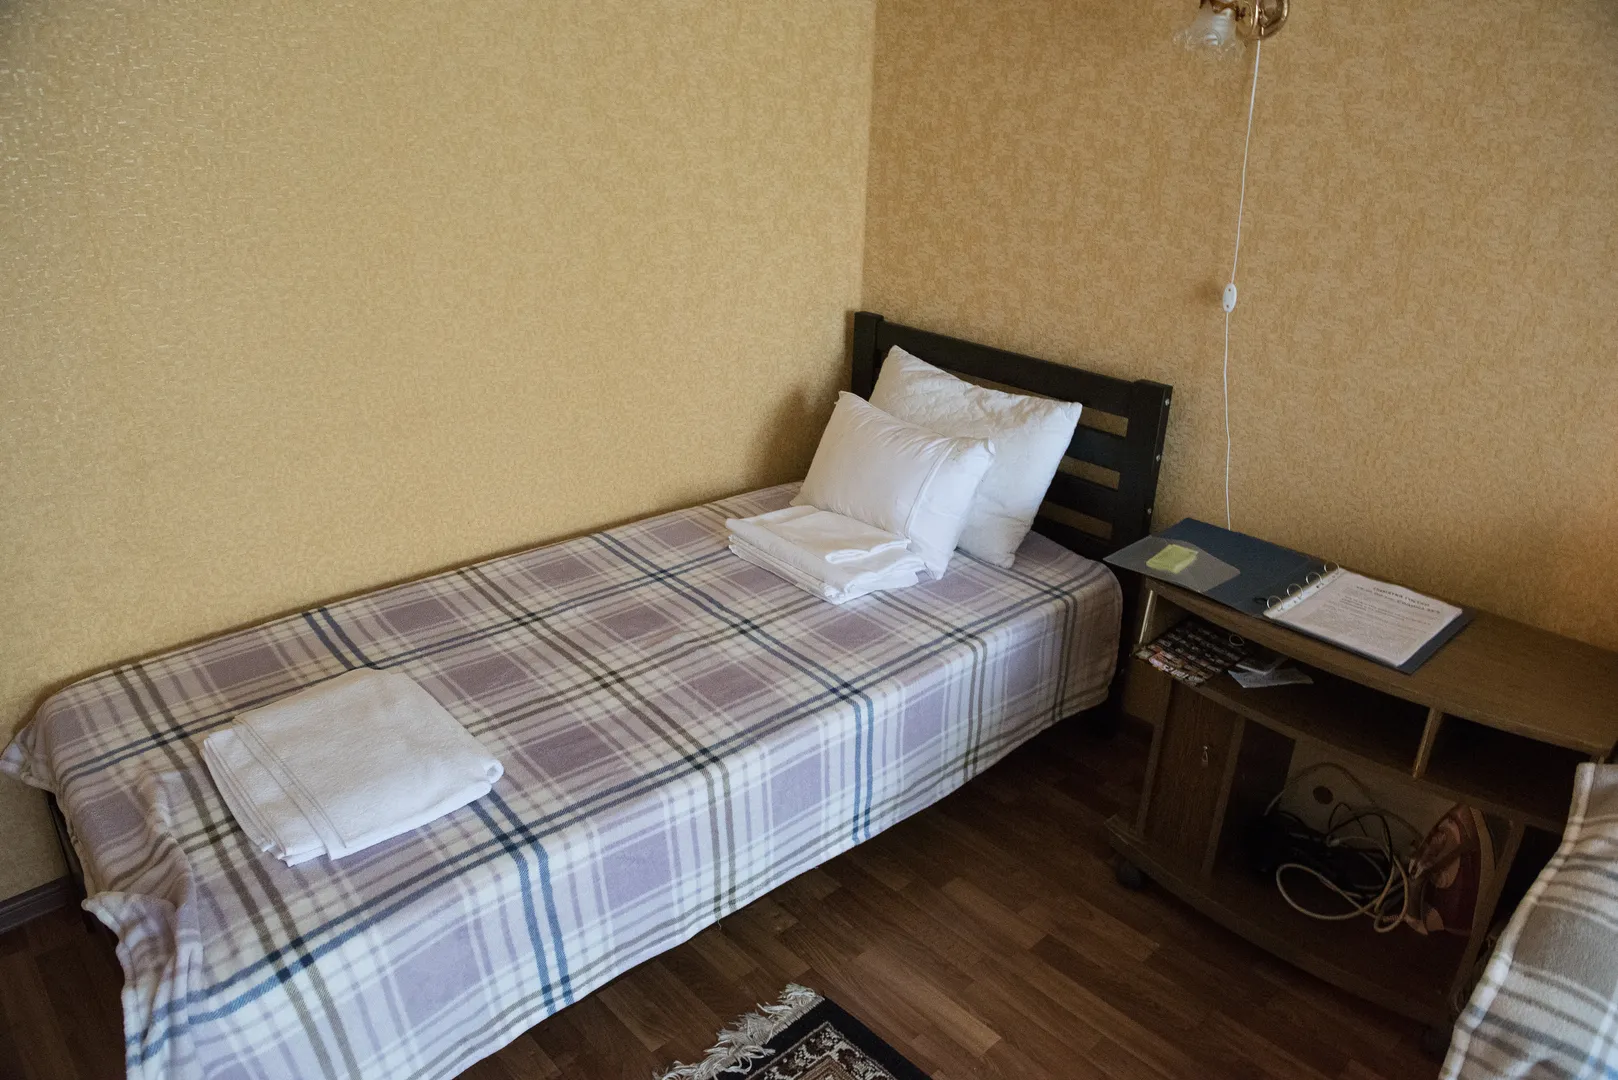 Спальня: односпальная кровать в деталях, прикроватная тумбочка с утюгом и памяткой для гостей